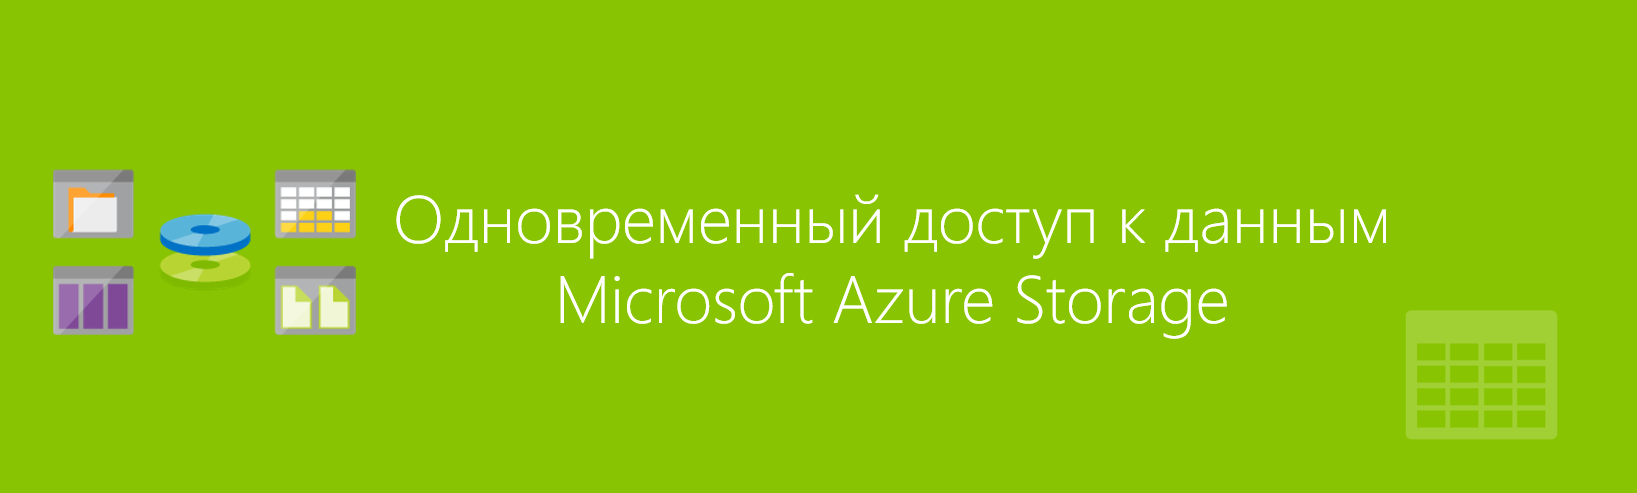 Организация одновременного доступа к данным в облачном хранилище Microsoft Azure Storage - 1